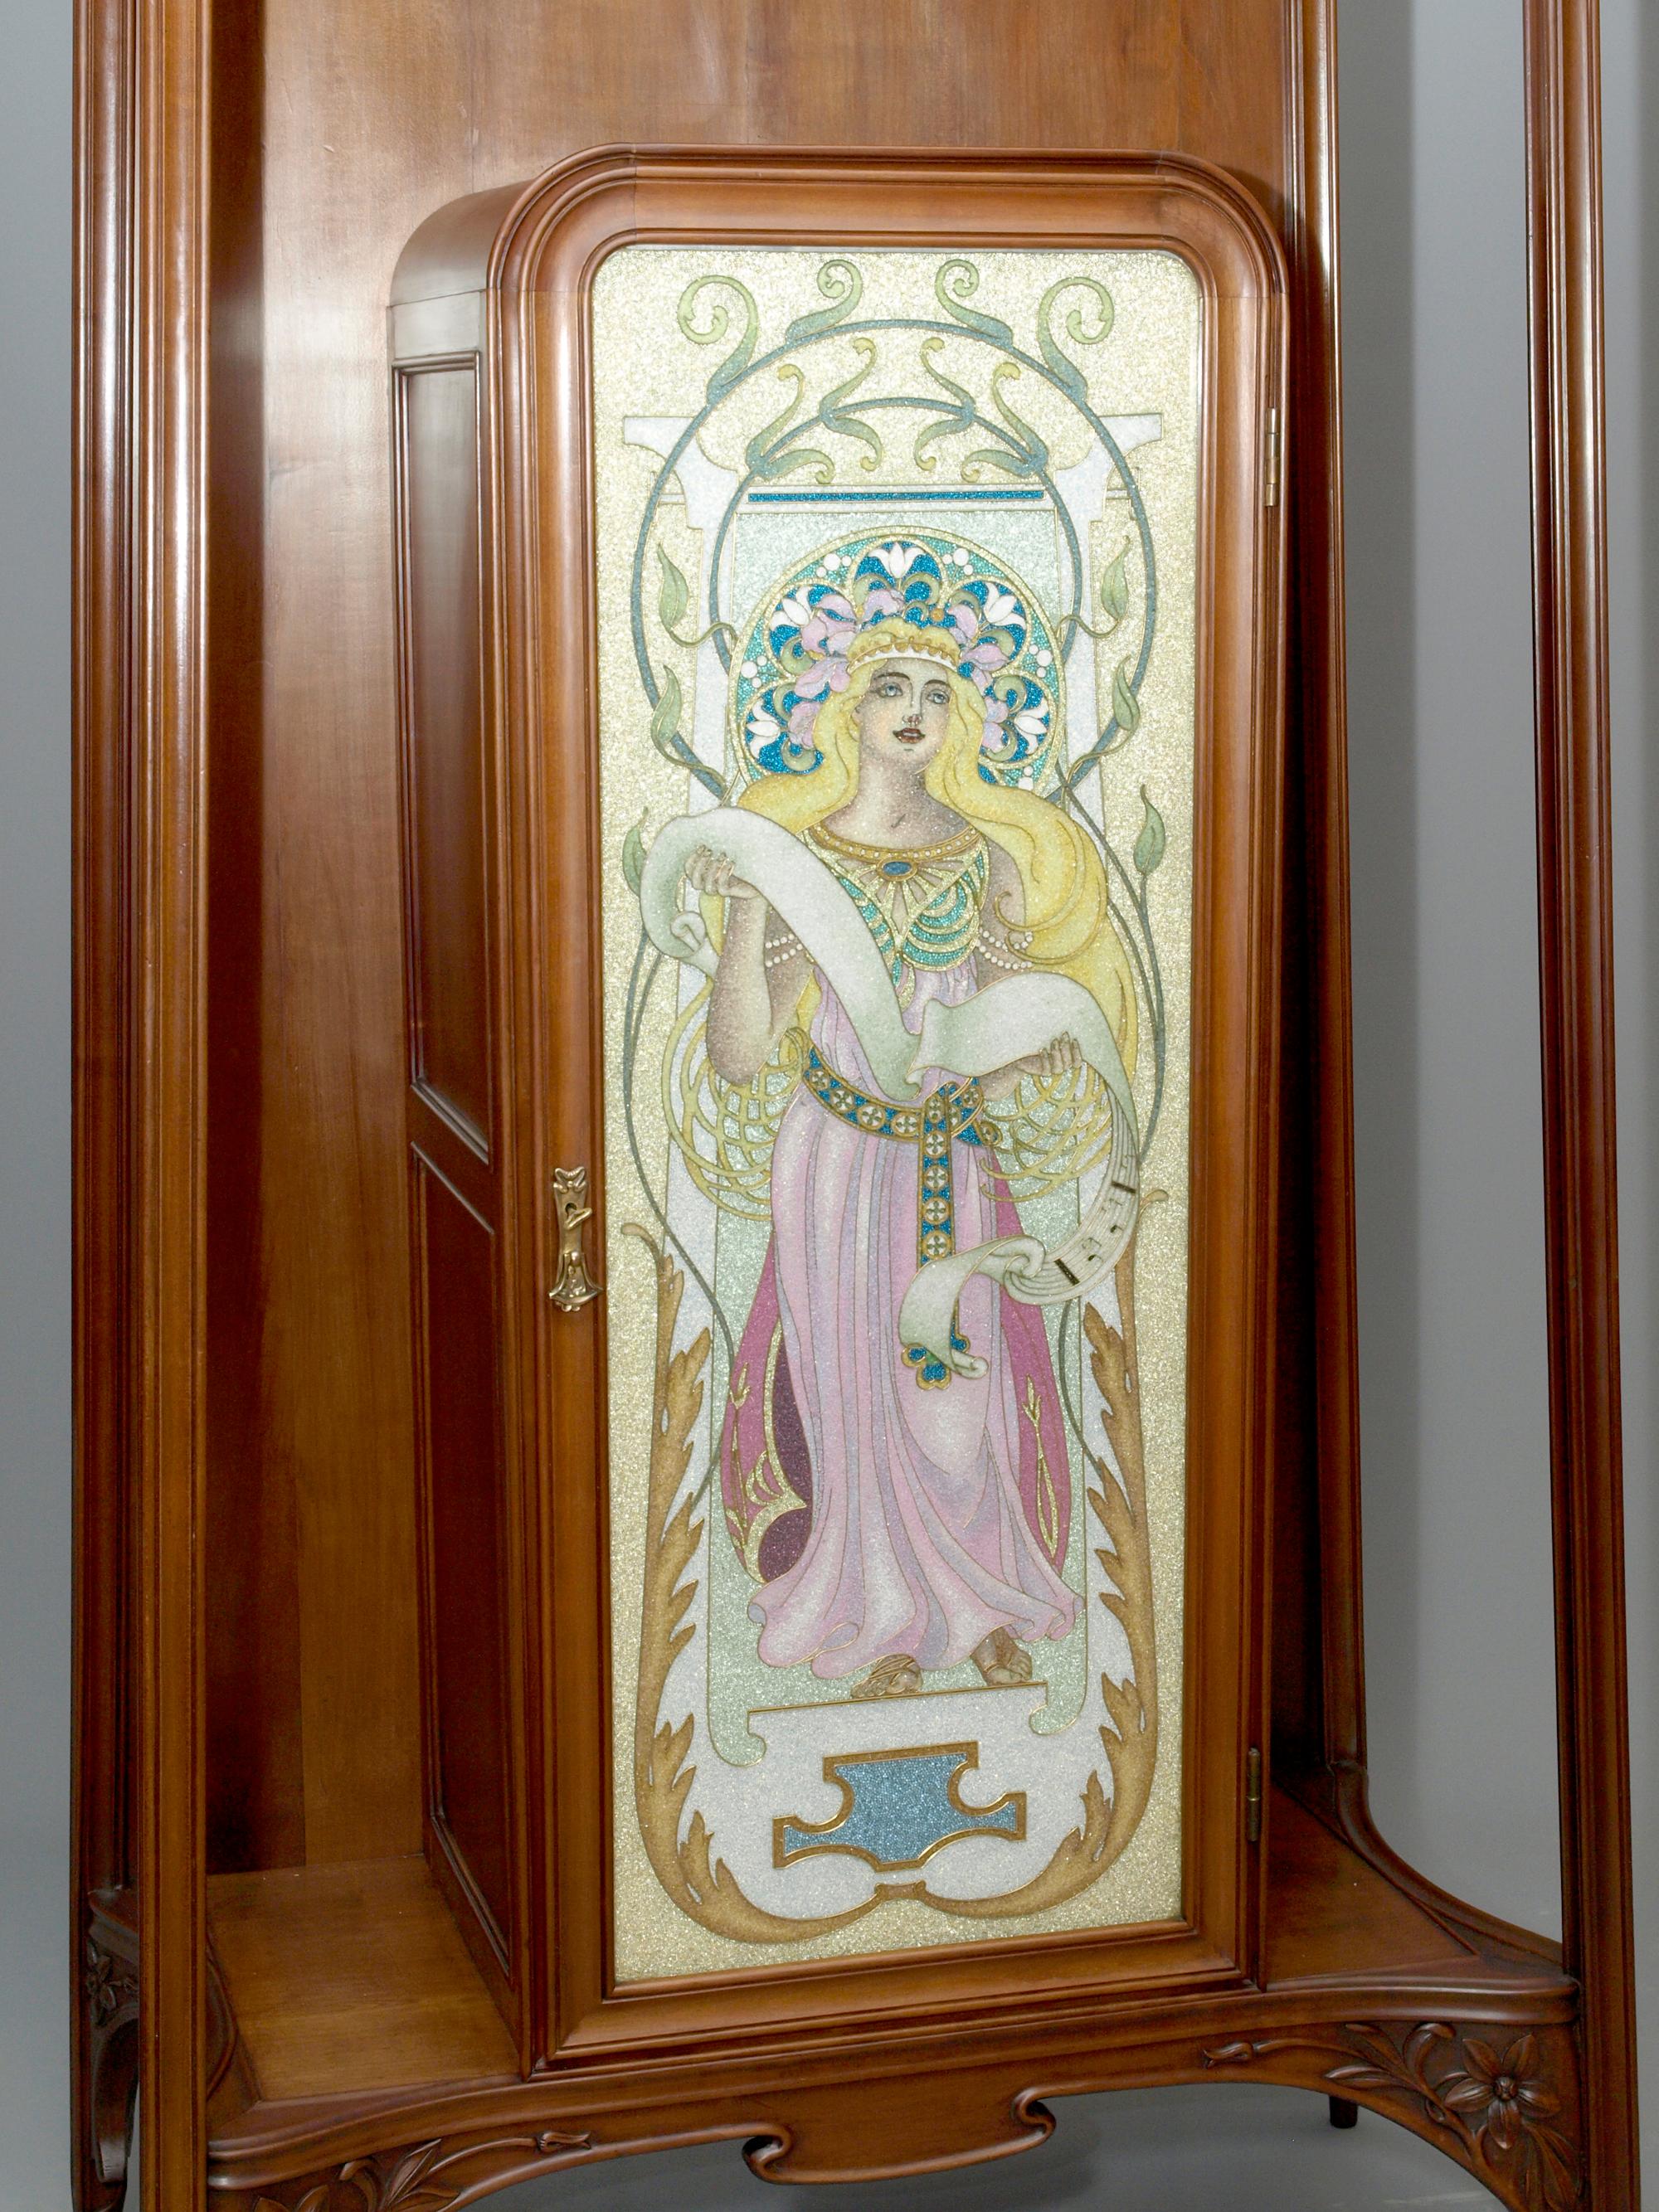 Edler Jugendstil Salonschrank mit floralen Schnitzereien und feiner Cloisonné-Glasarbeit, Louis Majorelle zugeschrieben, Nancy um 1900-1907.

Der Salonschrank besteht aus einem Rahmengestell aus Amerikanischen Kirschbaum, in dessen Zentrum ein